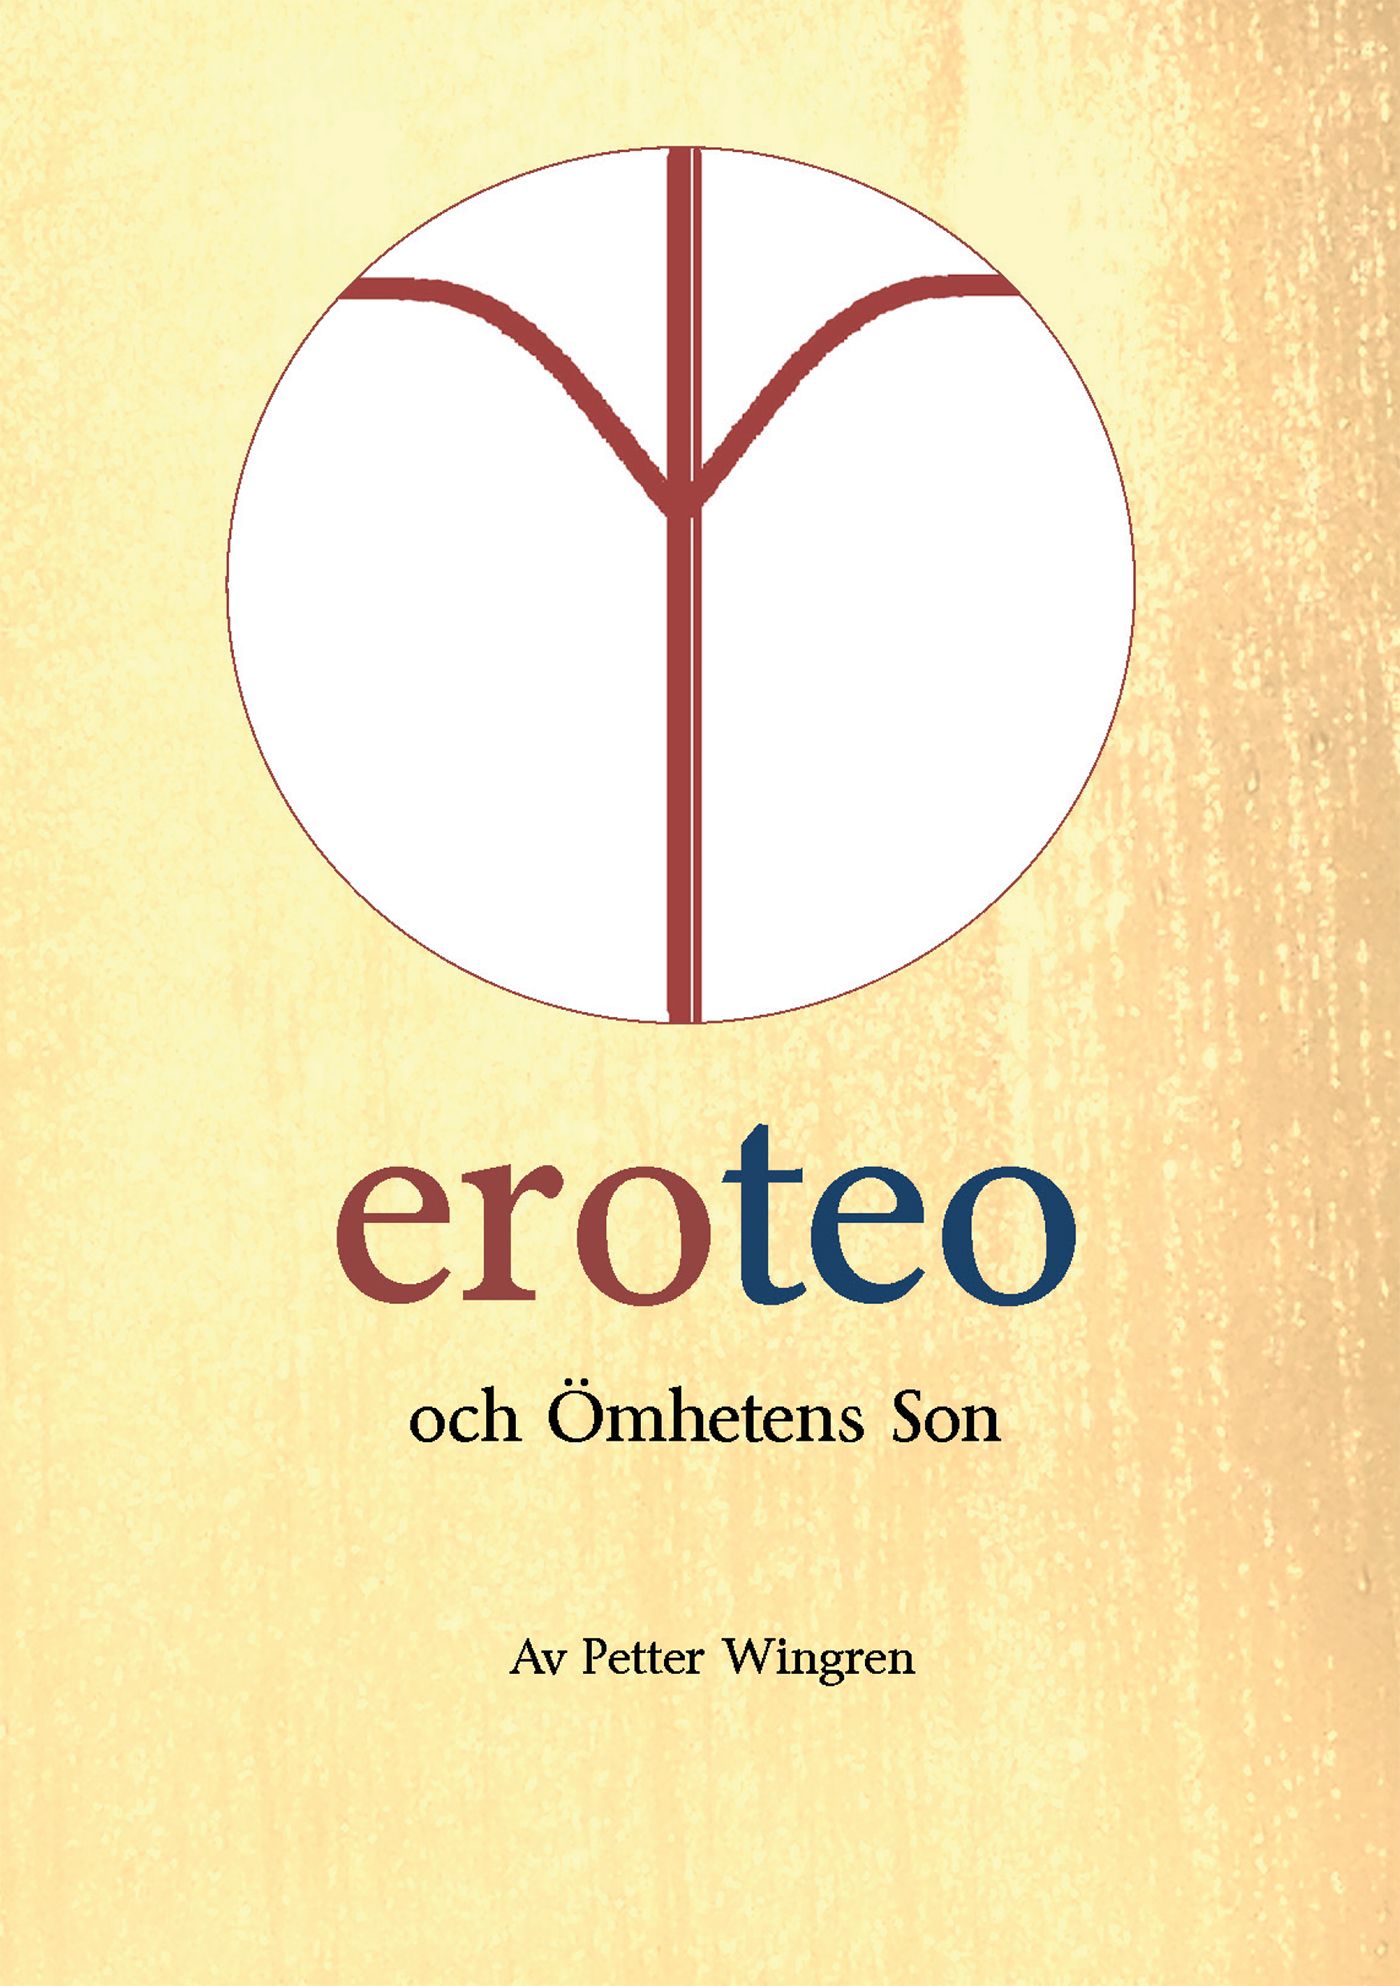 eroteo och ömhetens son, e-bog af Petter Wingren